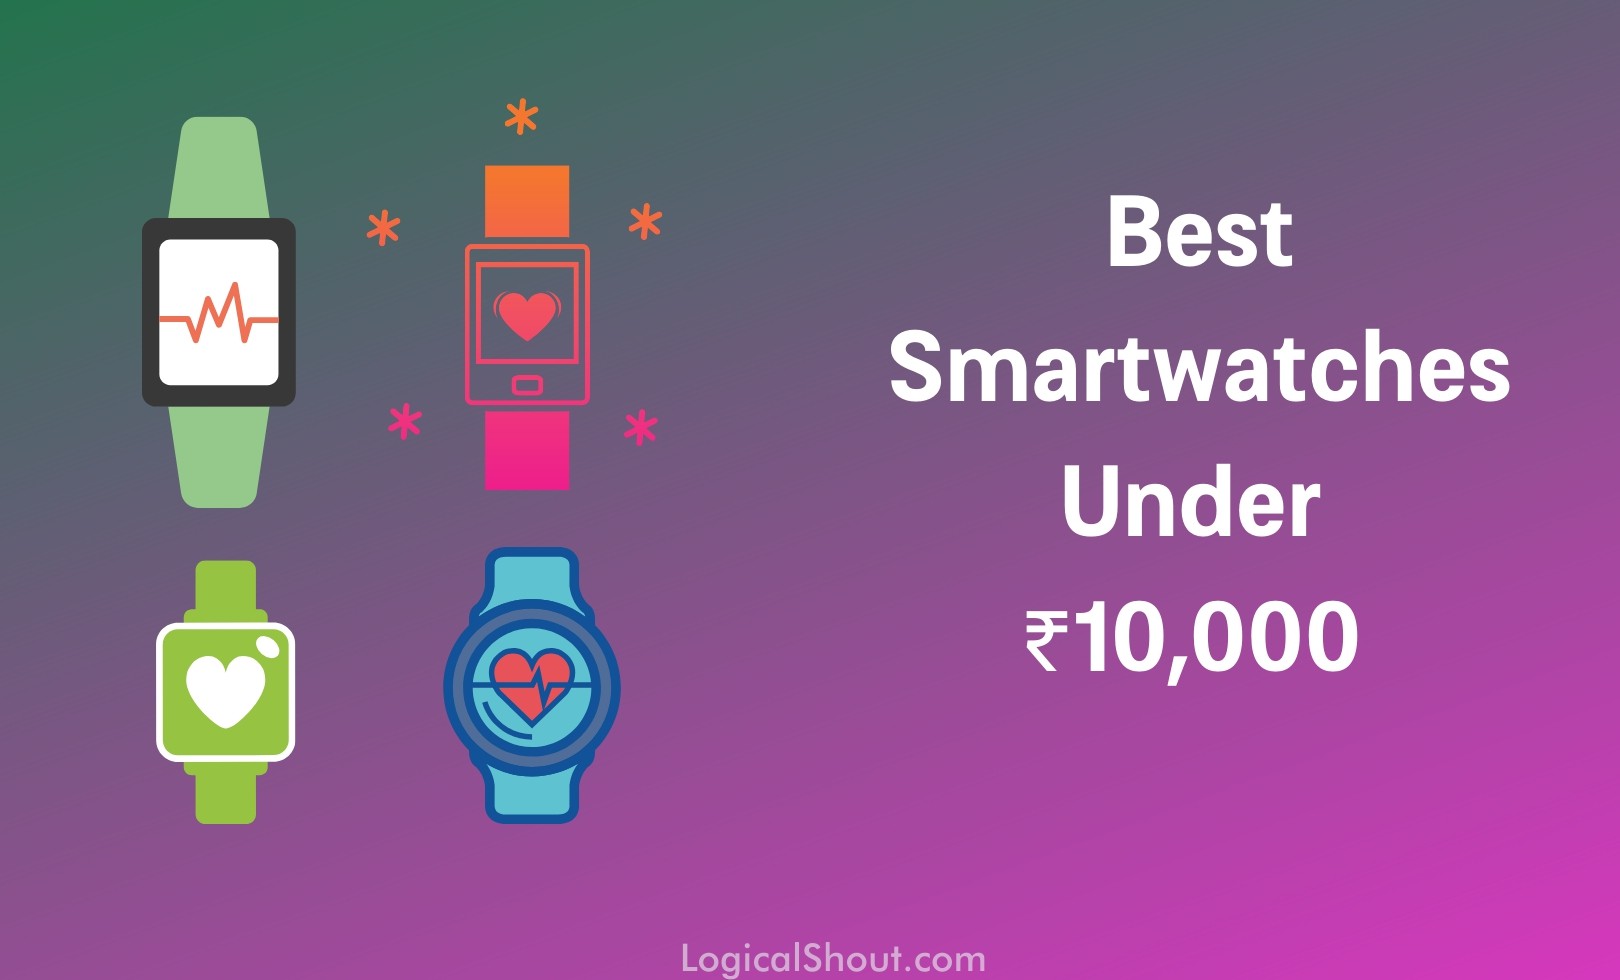 Best Smartwatches Under 10000